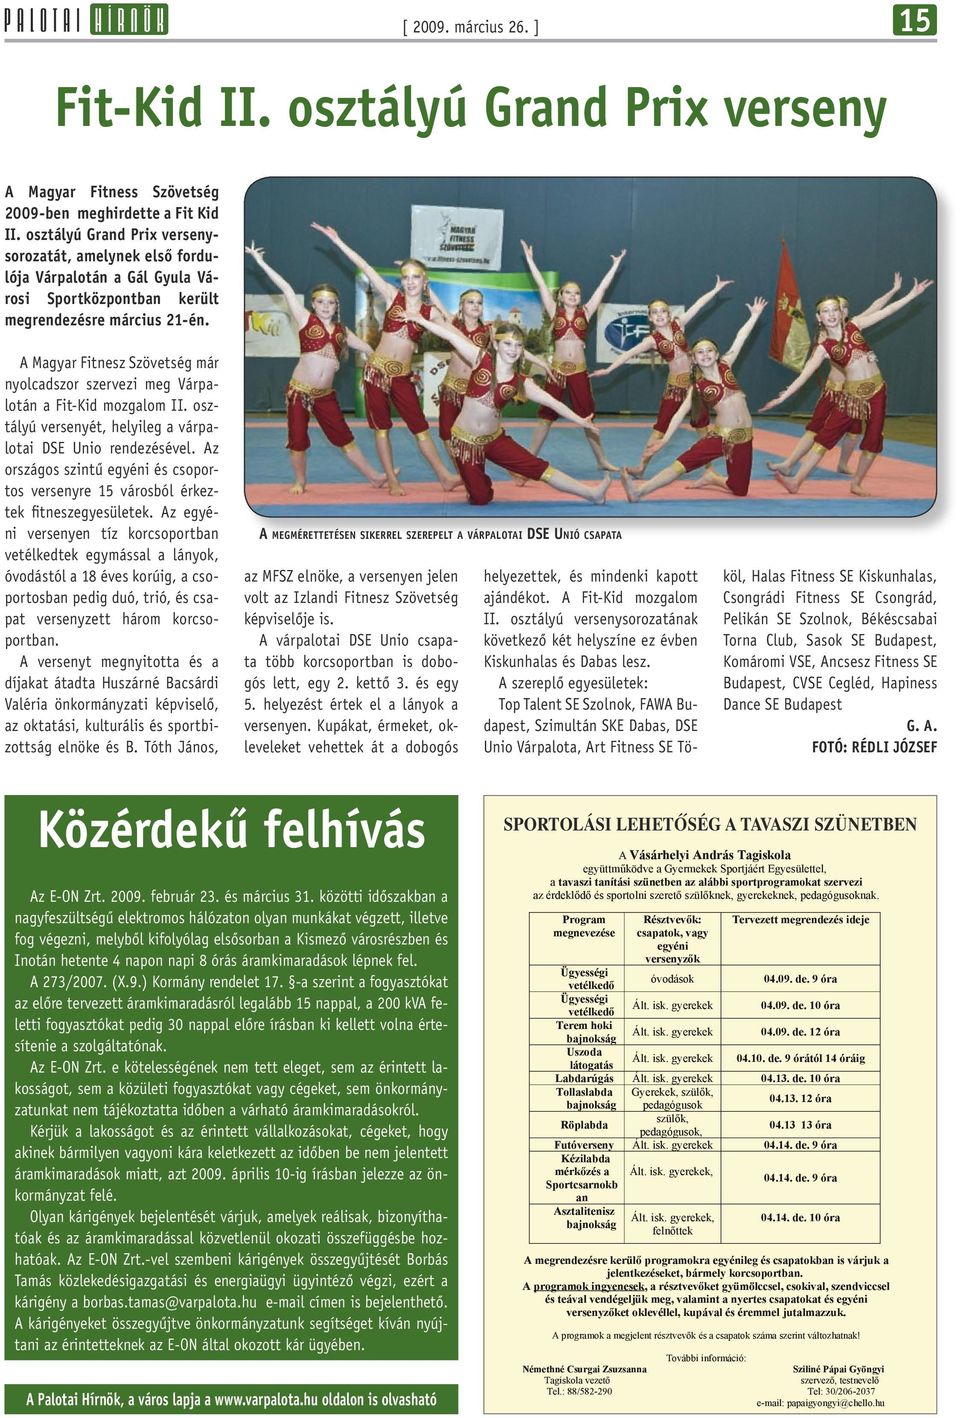 A Magyar Fitnesz Szövetség már nyolcadszor szervezi meg Várpalotán a Fit-Kid mozgalom II. osztályú versenyét, helyileg a várpalotai DSE Unio rendezésével.